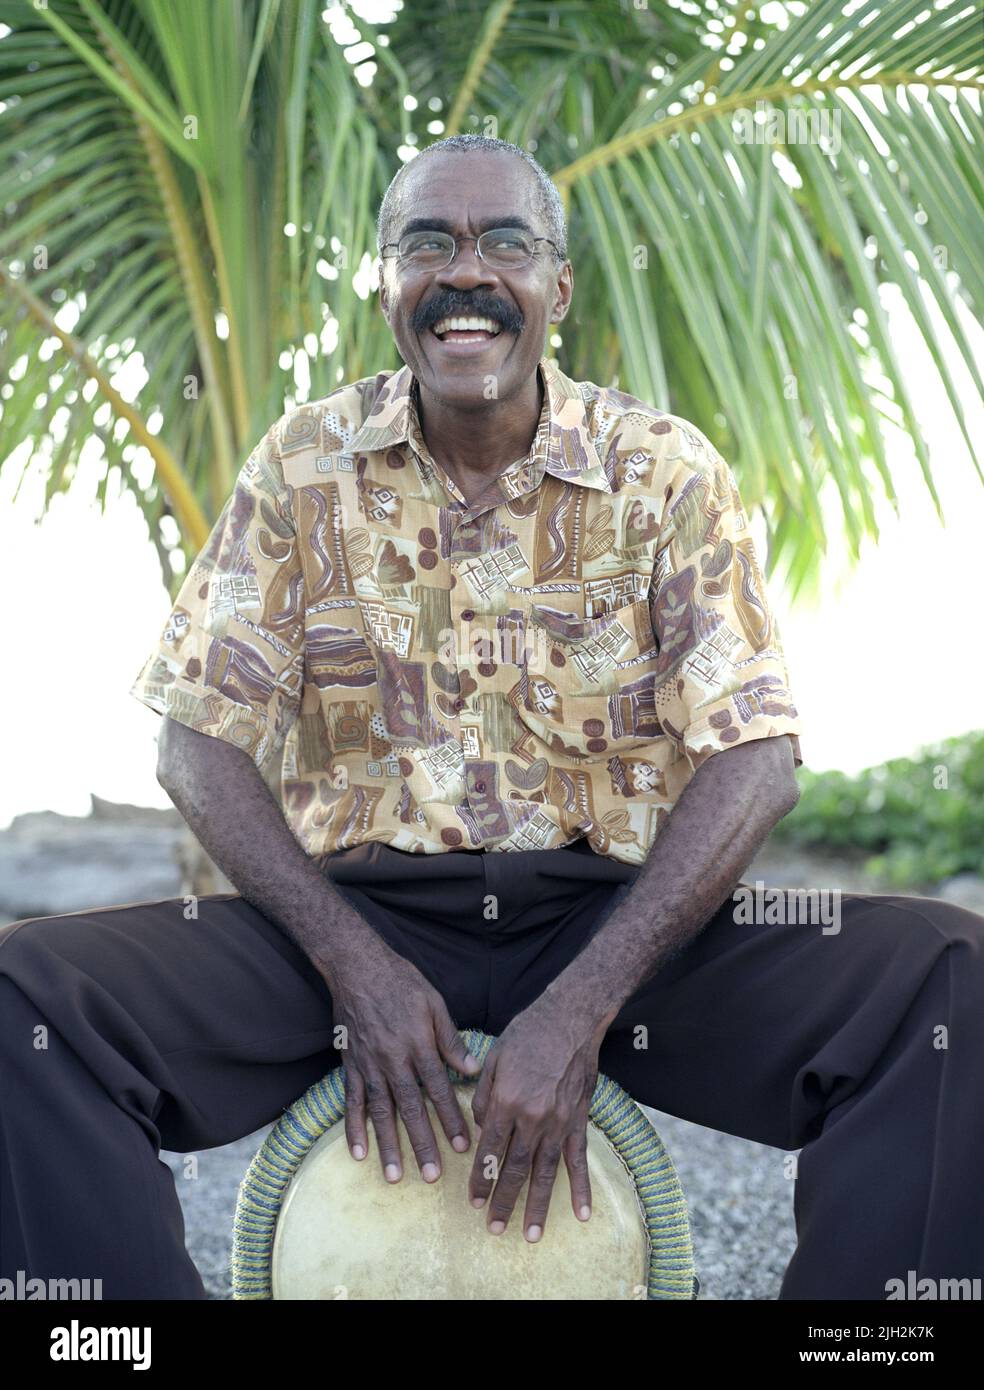 Un baterista de Bele toca en la playa. Fort de France, Martinica. Caribe Francés. Foto de stock